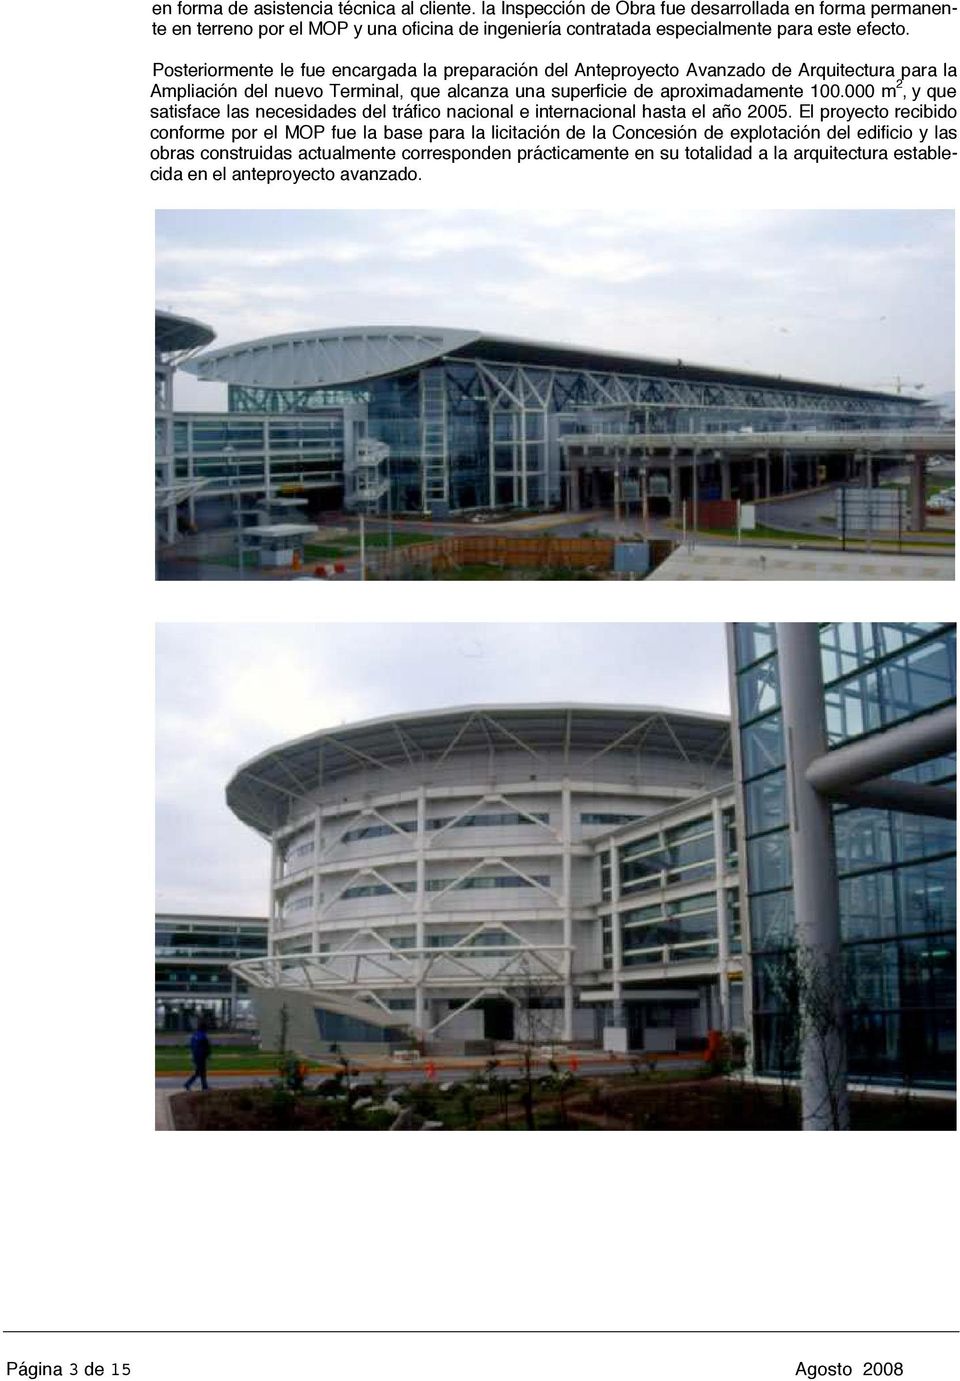 Posteriormente le fue encargada la preparación del Anteproyecto Avanzado de Arquitectura para la Ampliación del nuevo Terminal, que alcanza una superficie de aproximadamente 100.